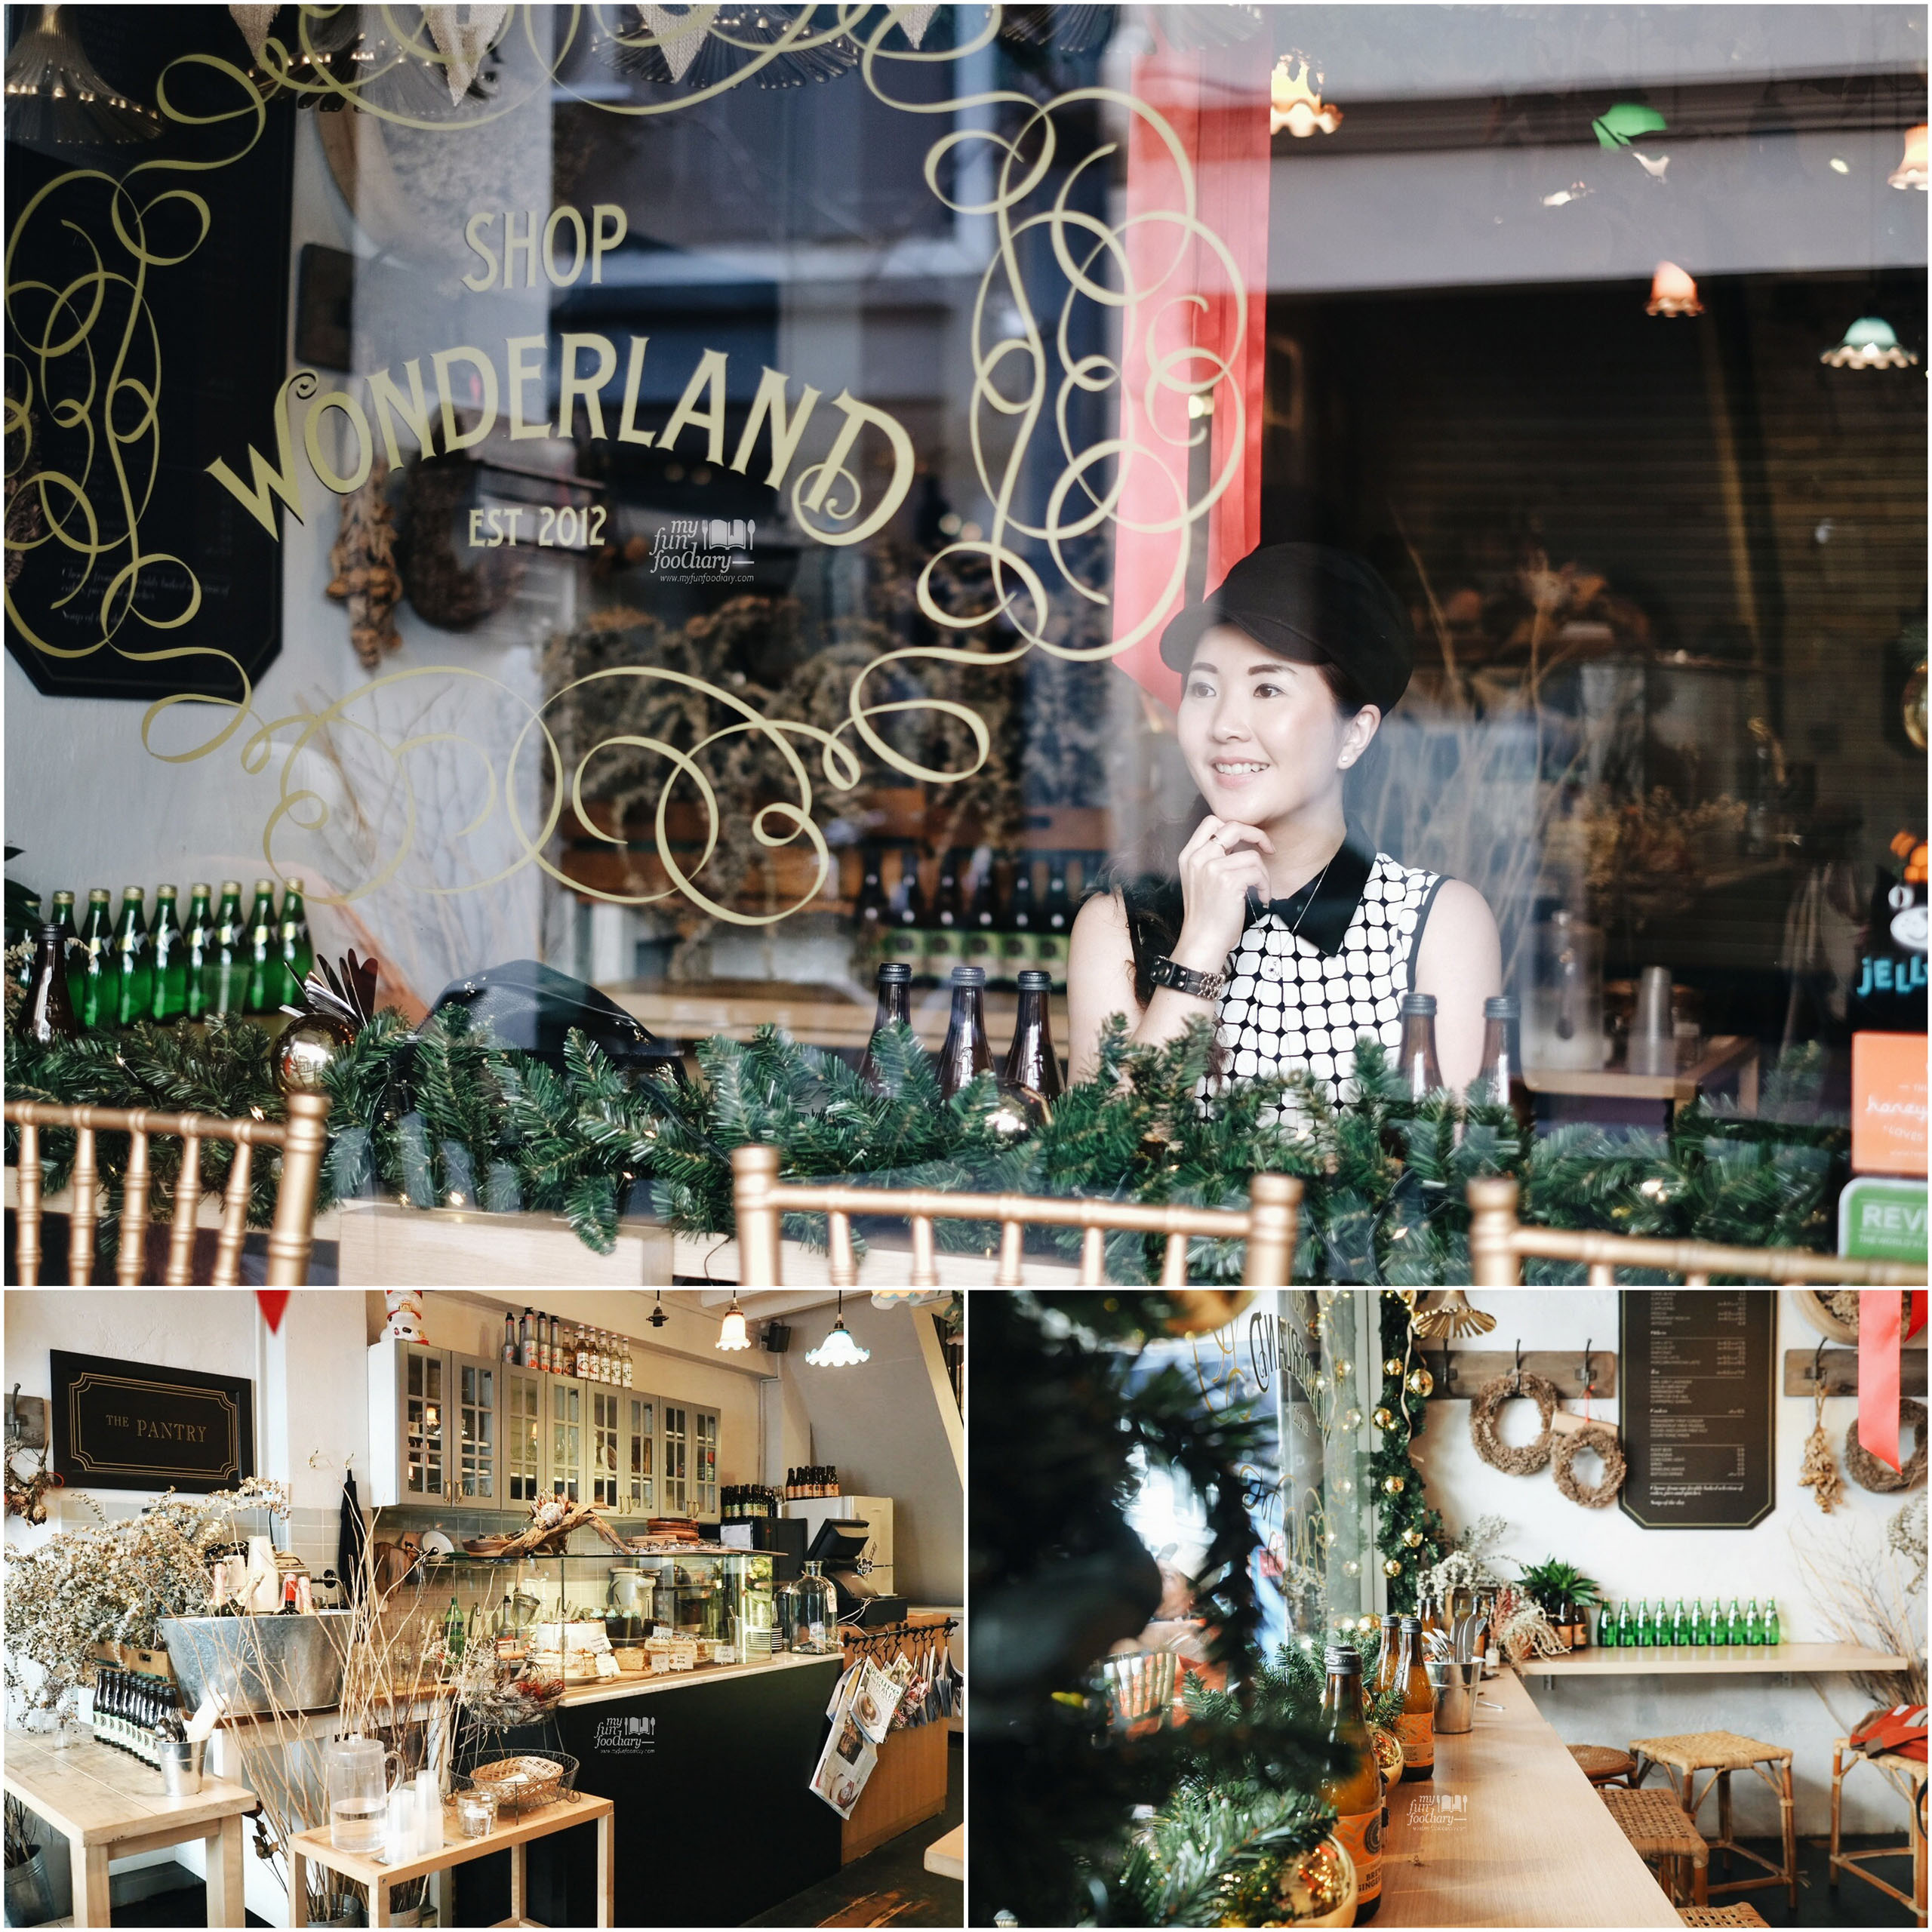 Cozy Christmas Ambiance at Shop Wonderland Singapore by Myfunfoodiary